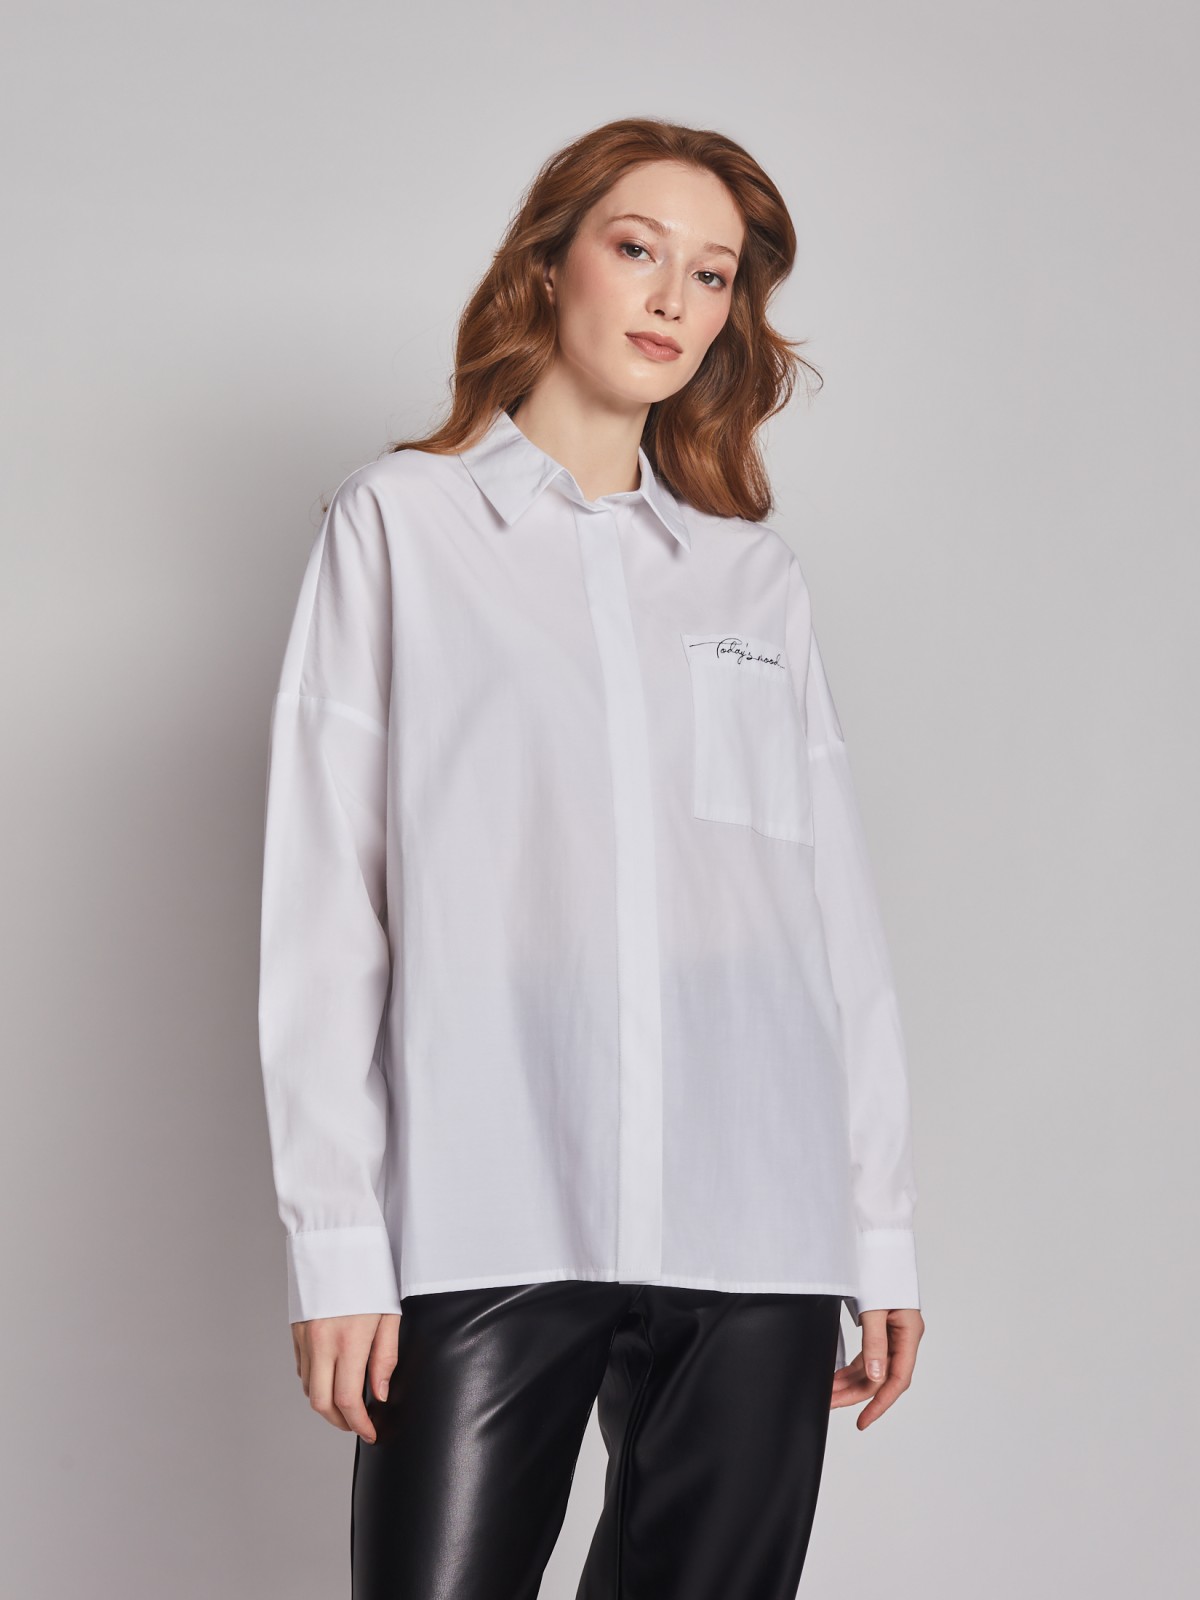 Рубашка с принтом на спине zolla 02312117Y273, цвет белый, размер XS - фото 1